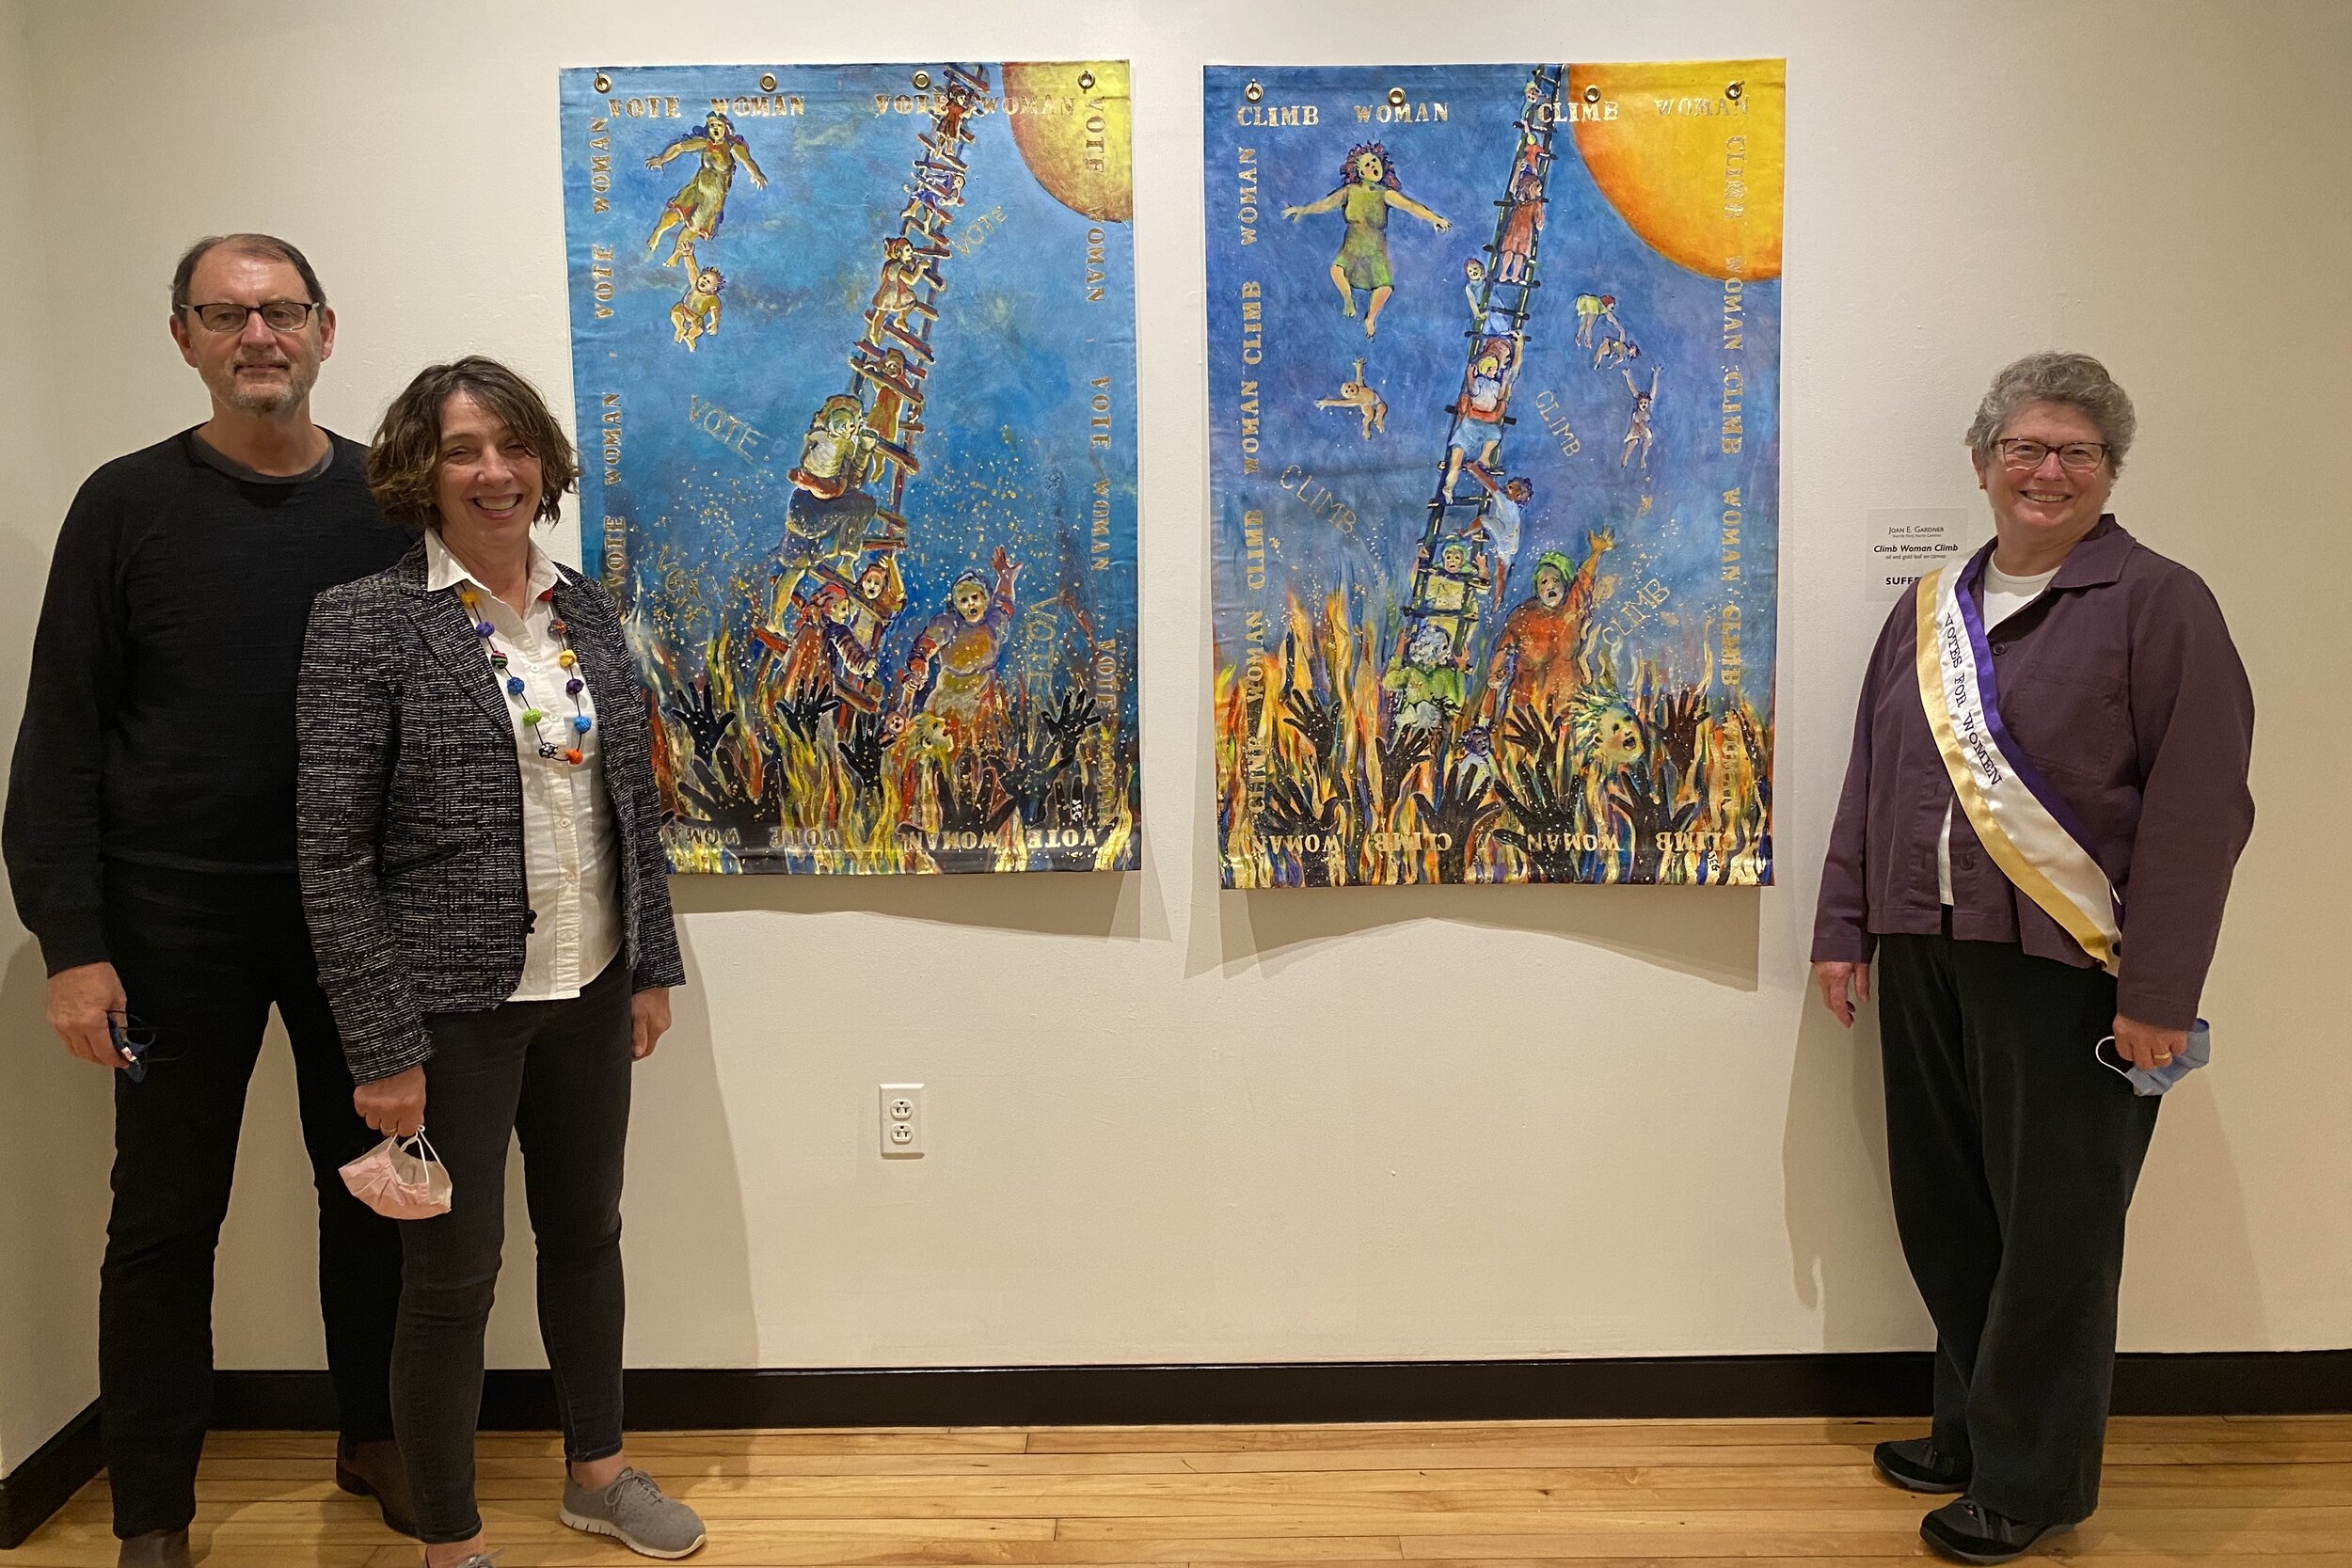 Tom, Cindy Lundy and Linda Greenwell heart Joanie's art.